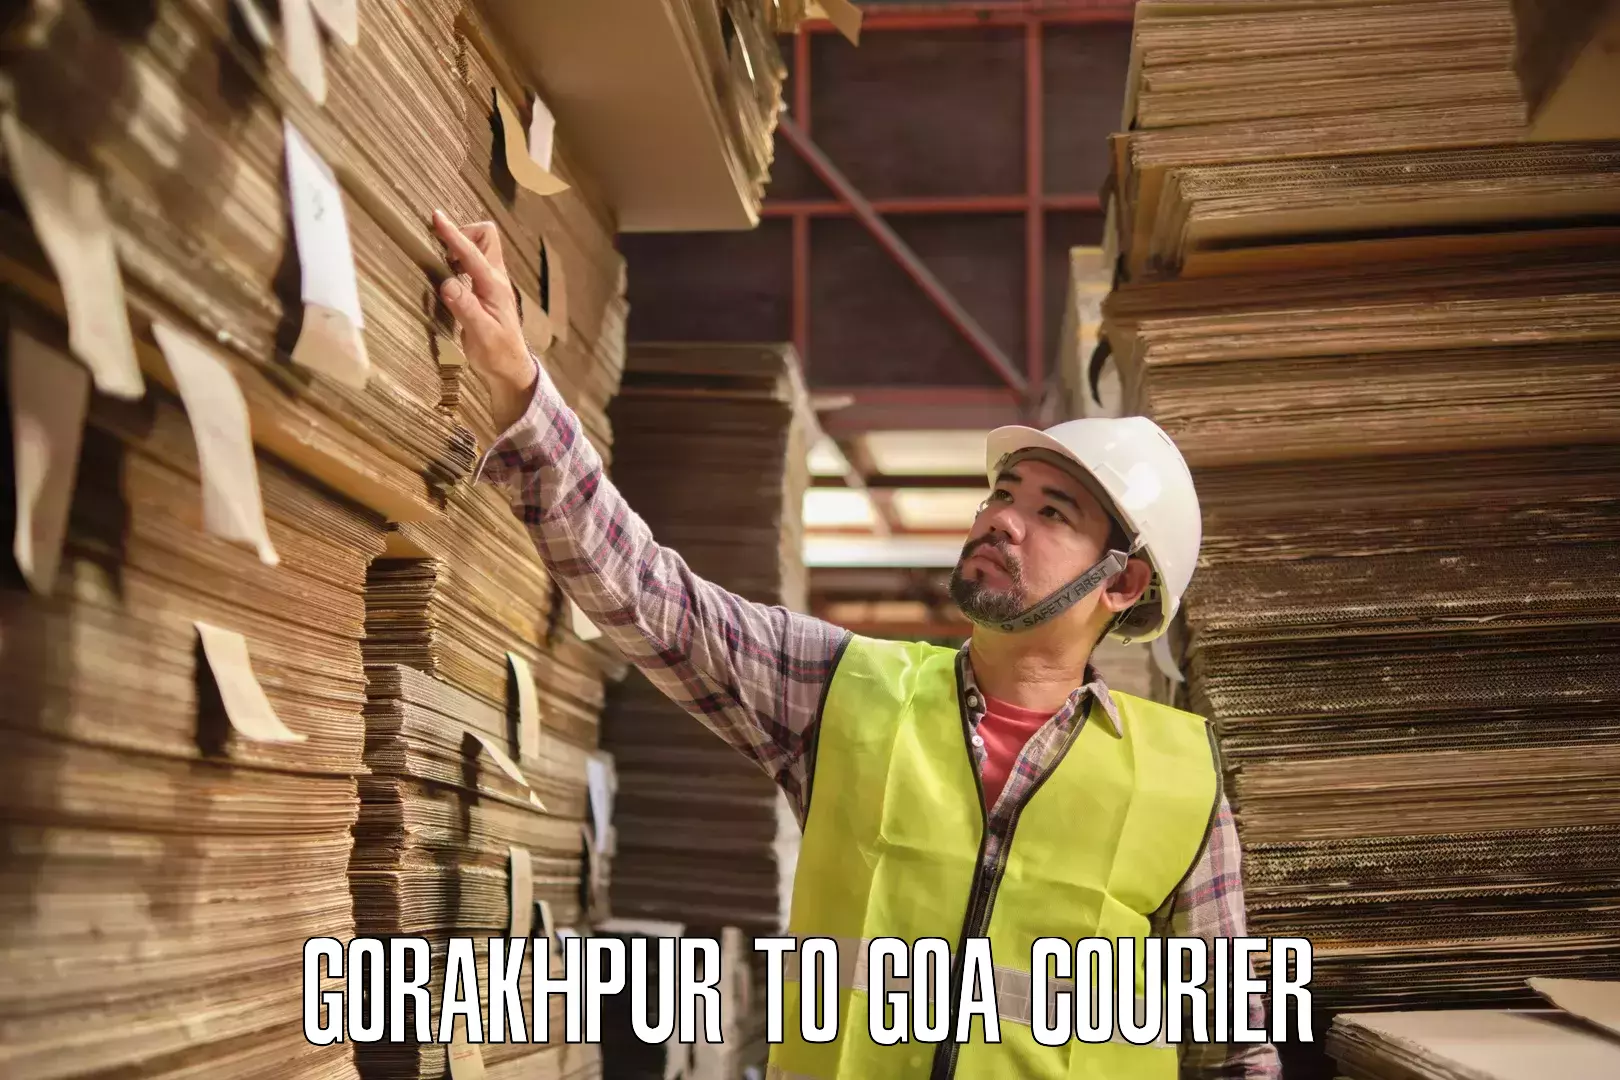 Courier services Gorakhpur to Panaji